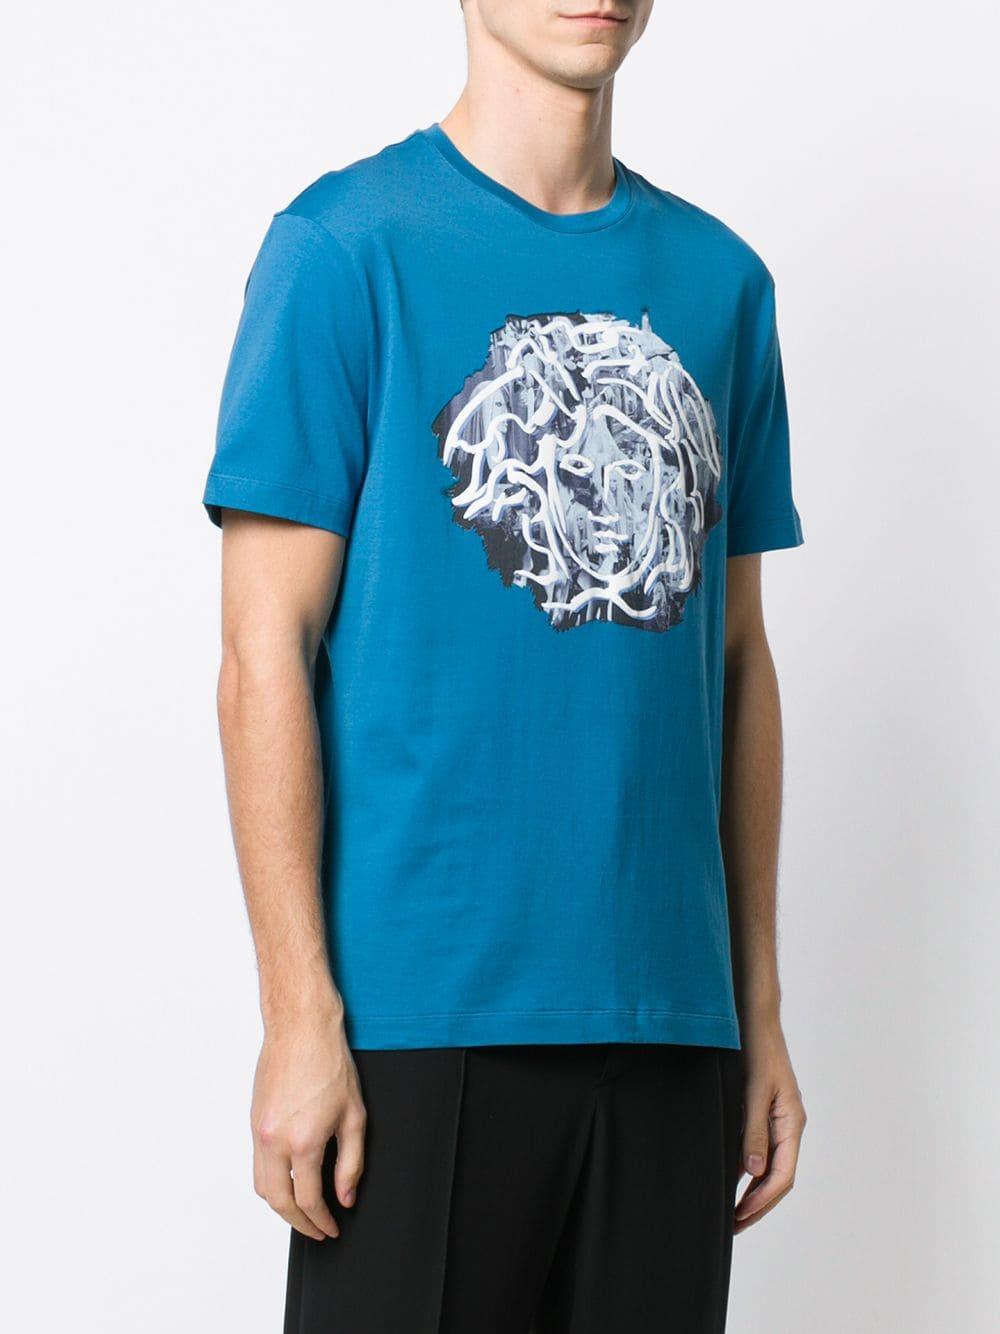 Versace Medusa T-shirt in Blue for Men - Lyst